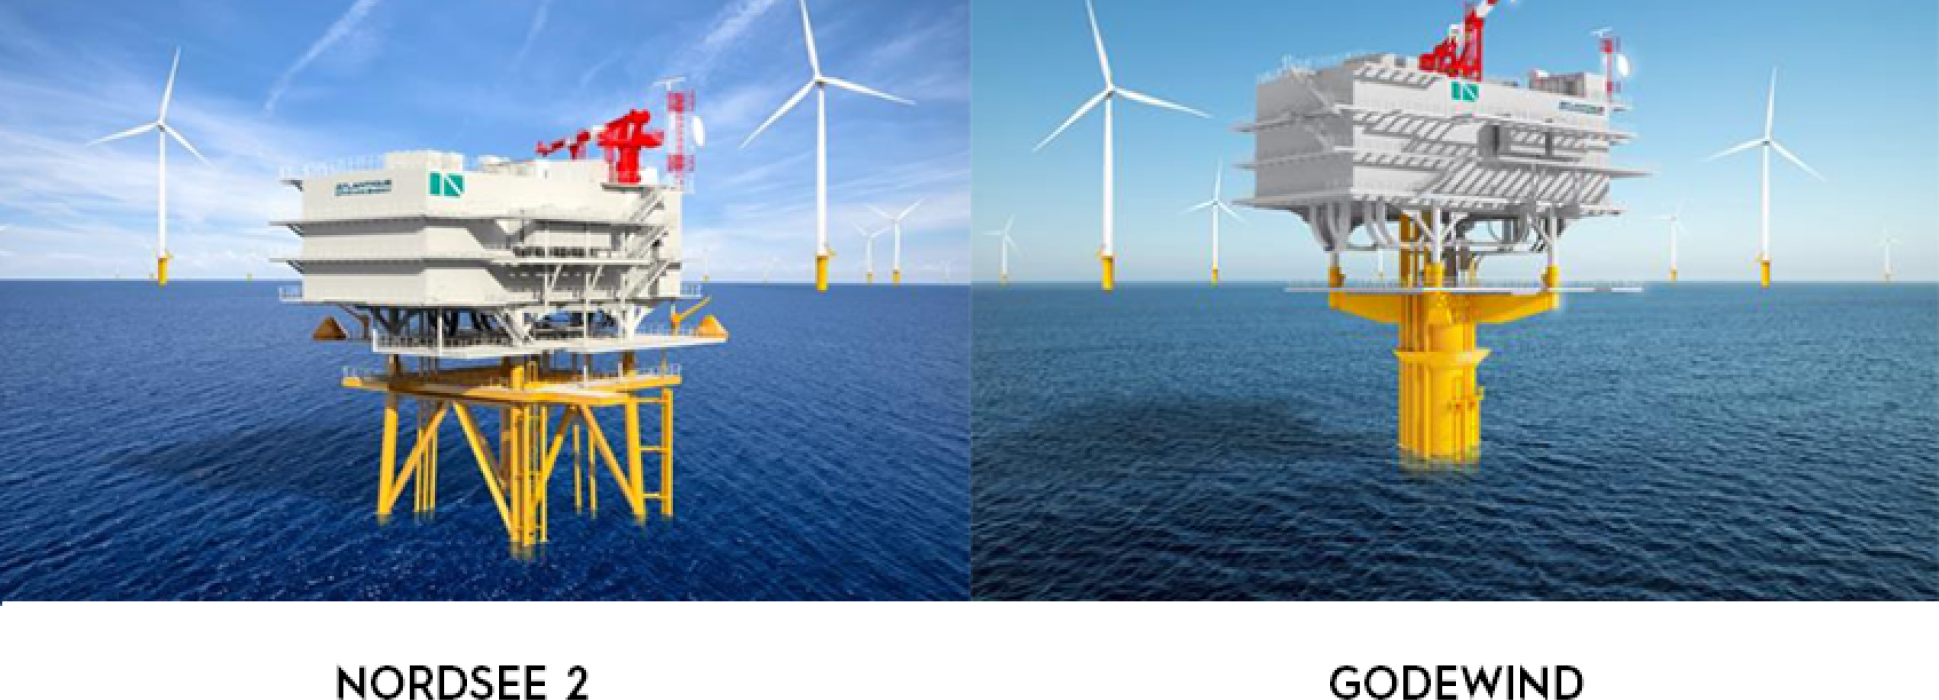 Atlantique Offshore Energy signe un important contrat avec l'énergéticien allemand RWE